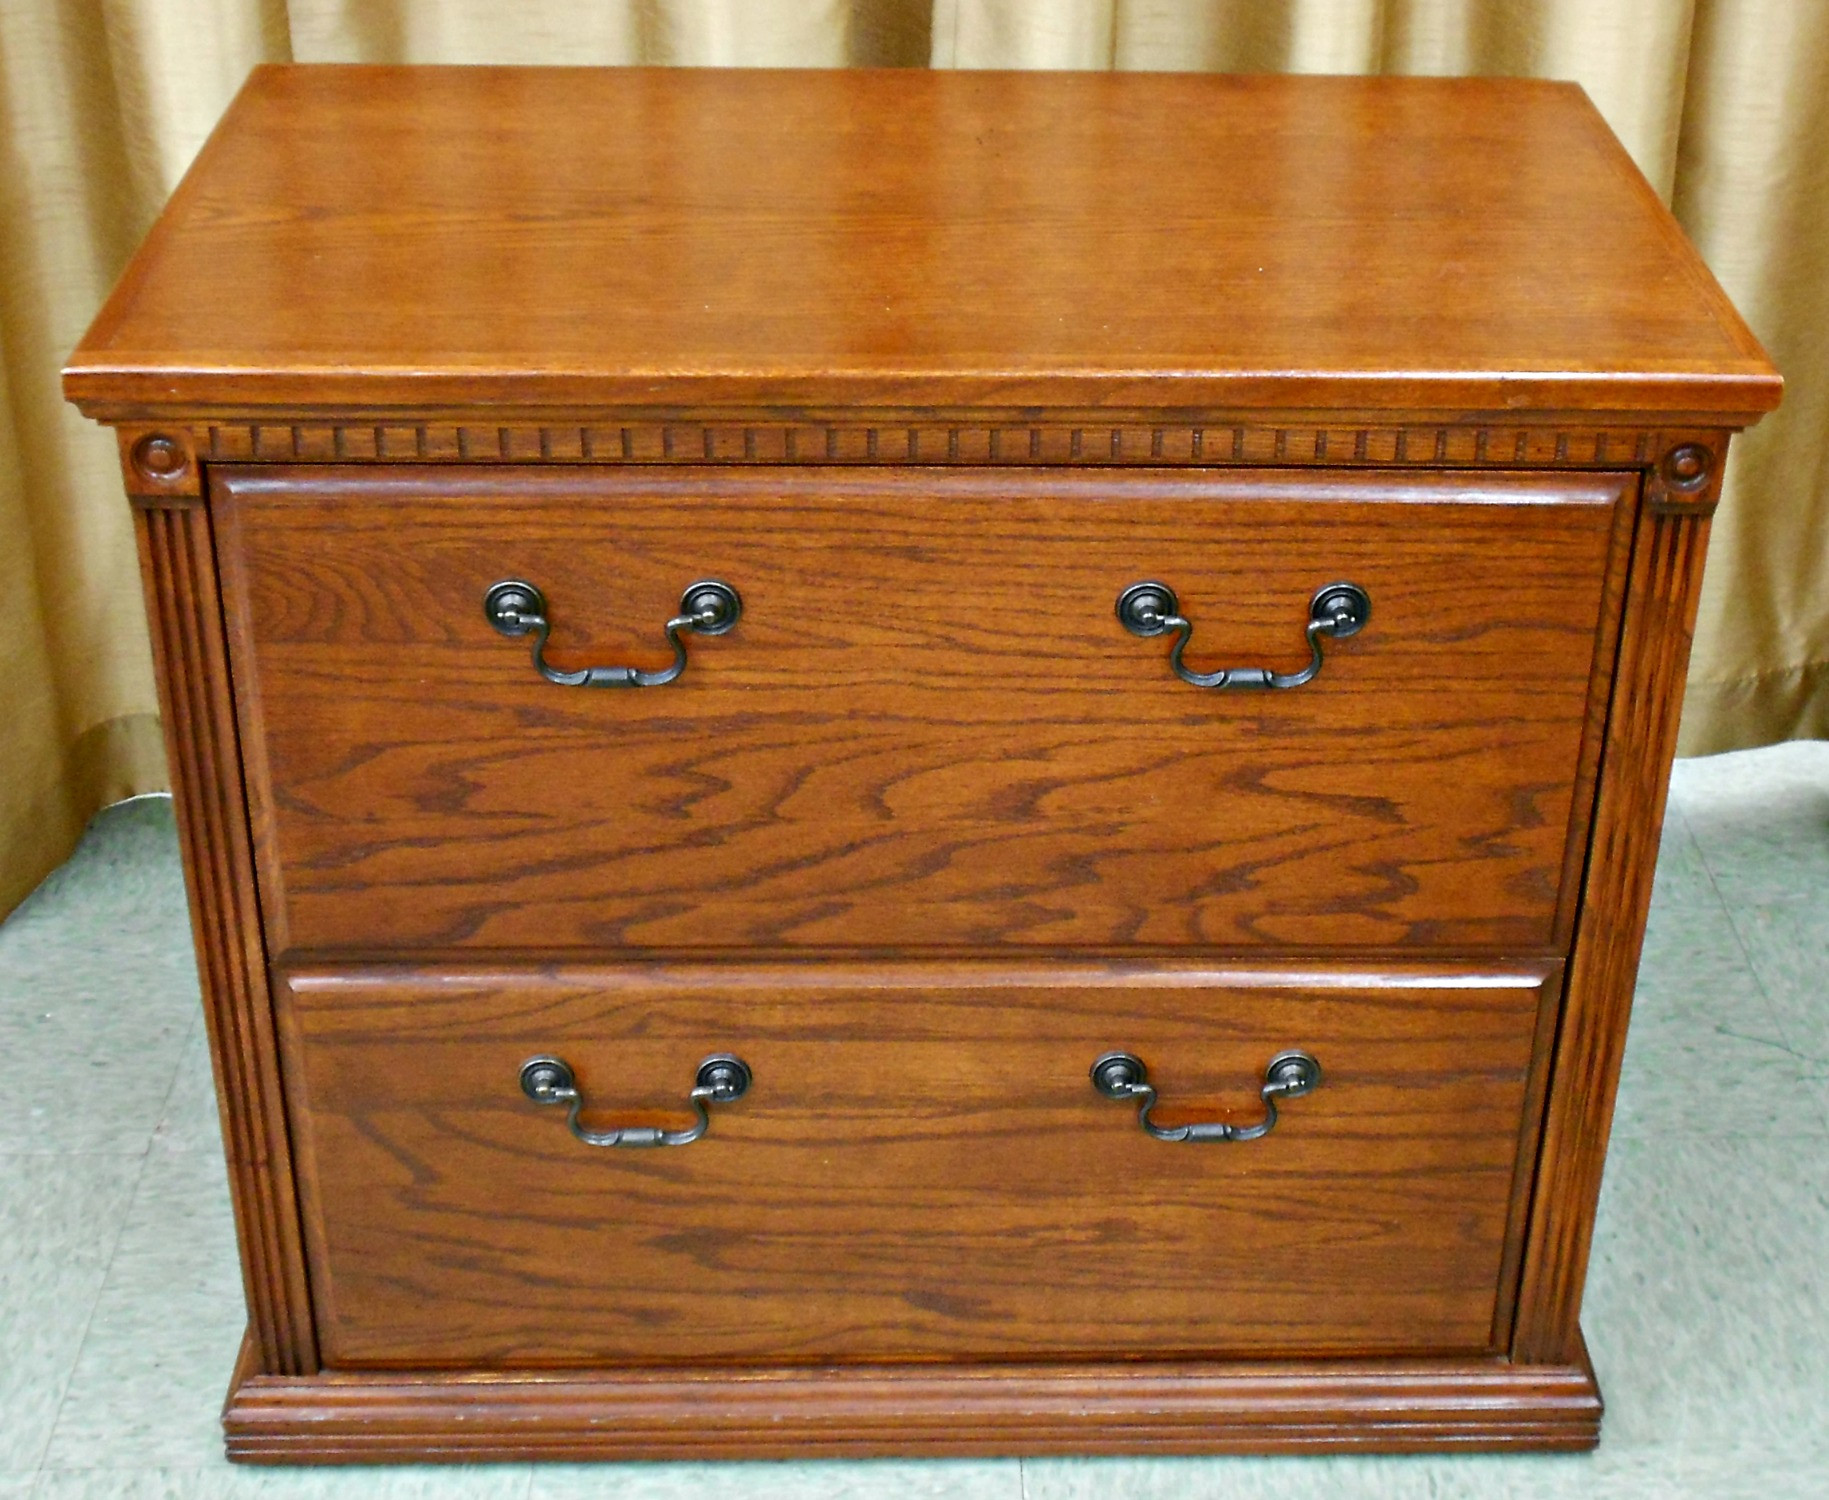 Best ideas about Oak Filing Cabinet
. Save or Pin Filing Cabinets Oak richfielduniversity Now.